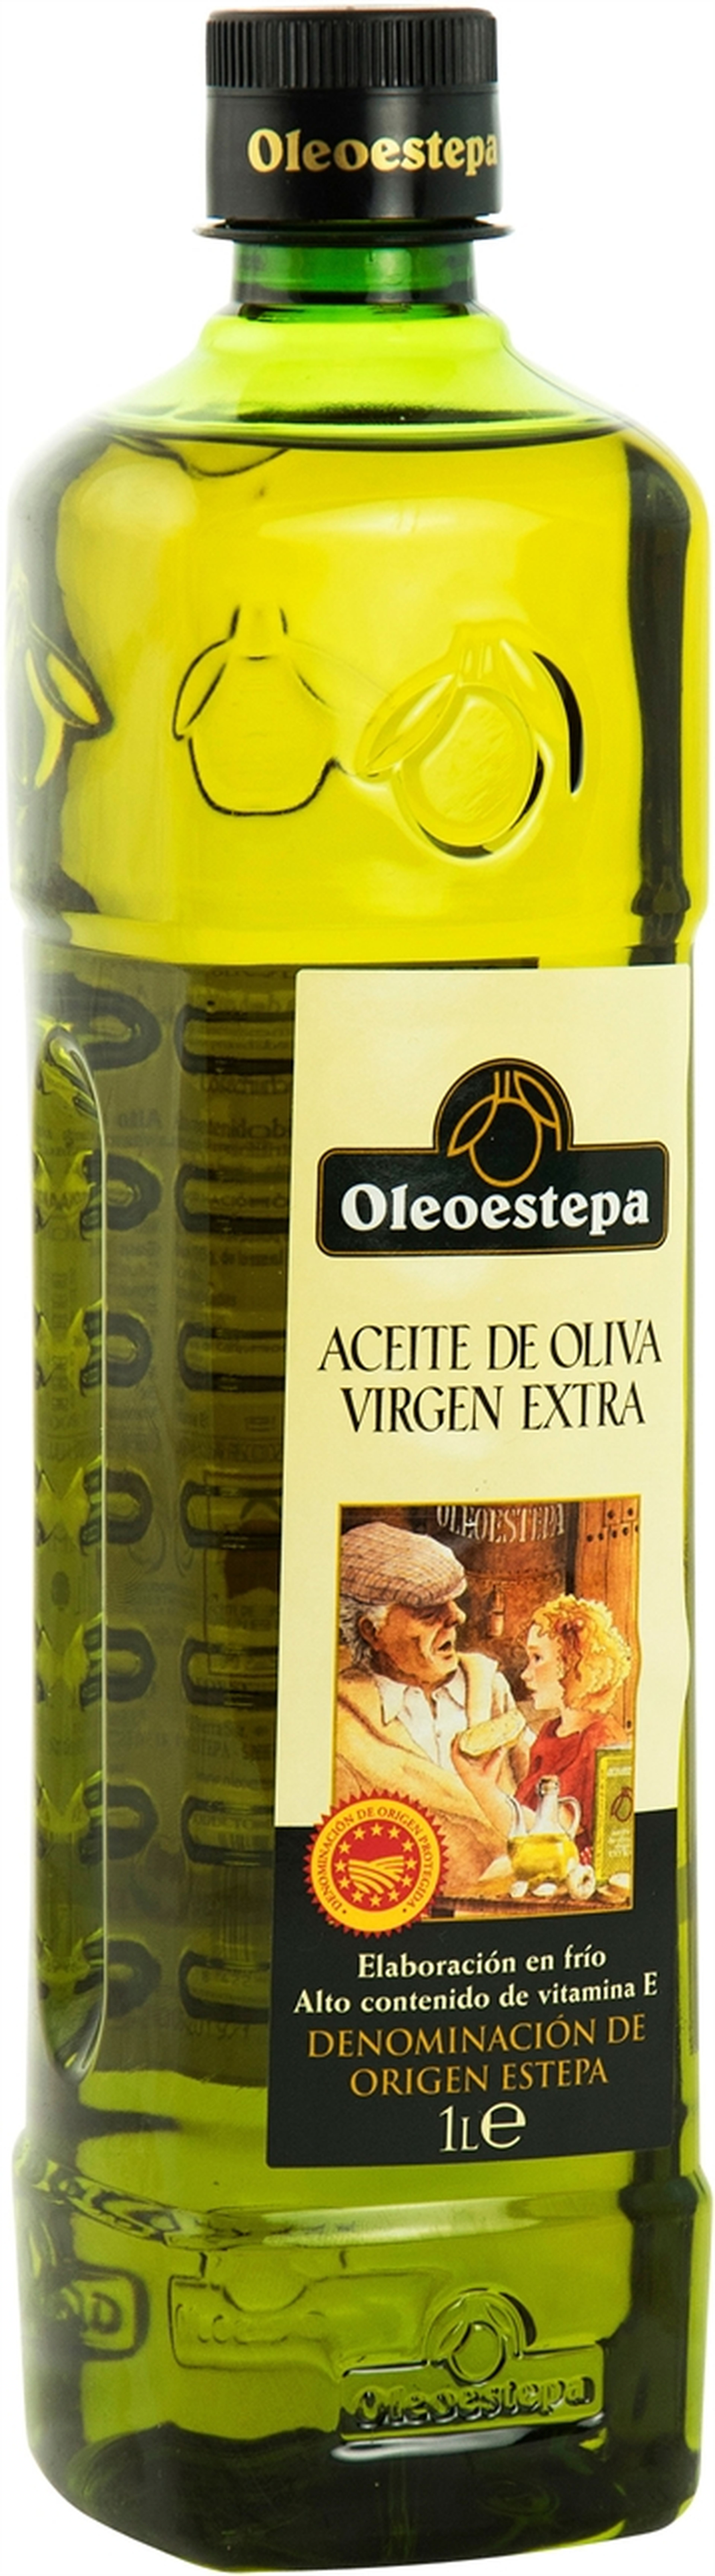 Los mejores aceites de oliva virgen extra de supermercado